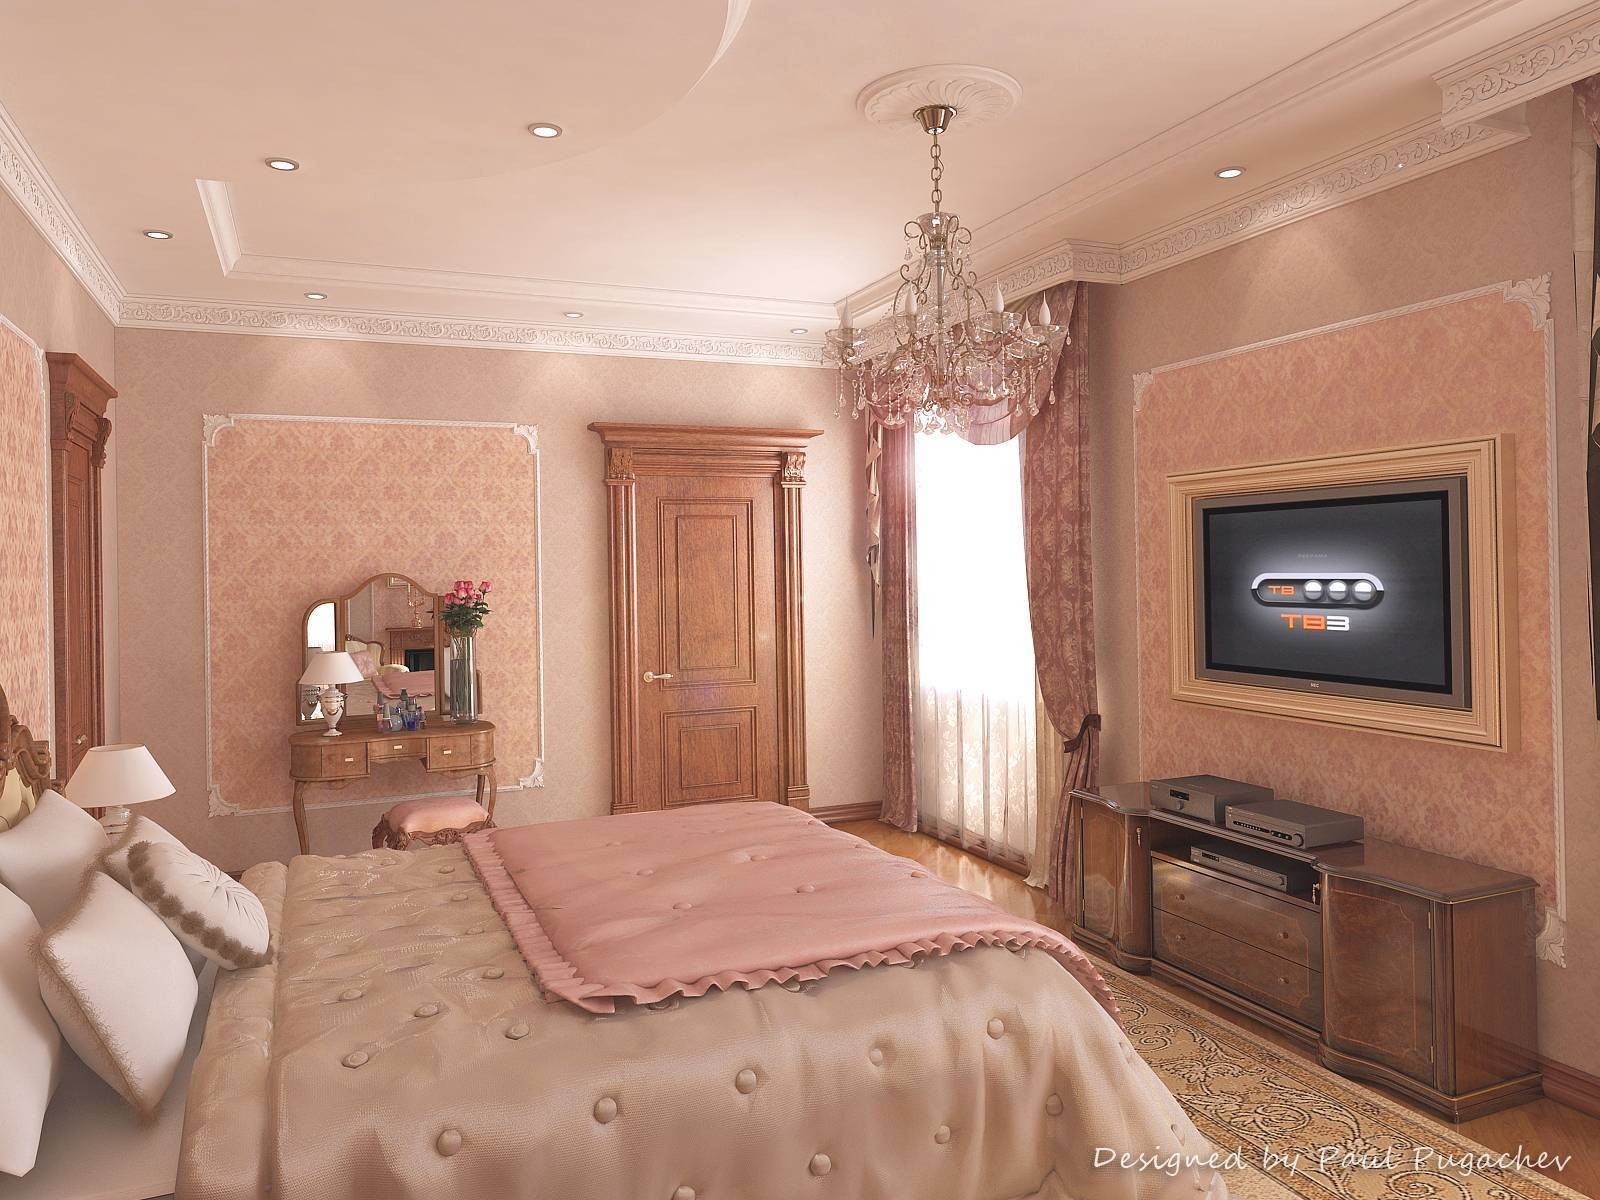 Дизайн спальни в частном доме » Картинки и фотографии дизайна квартир ...
